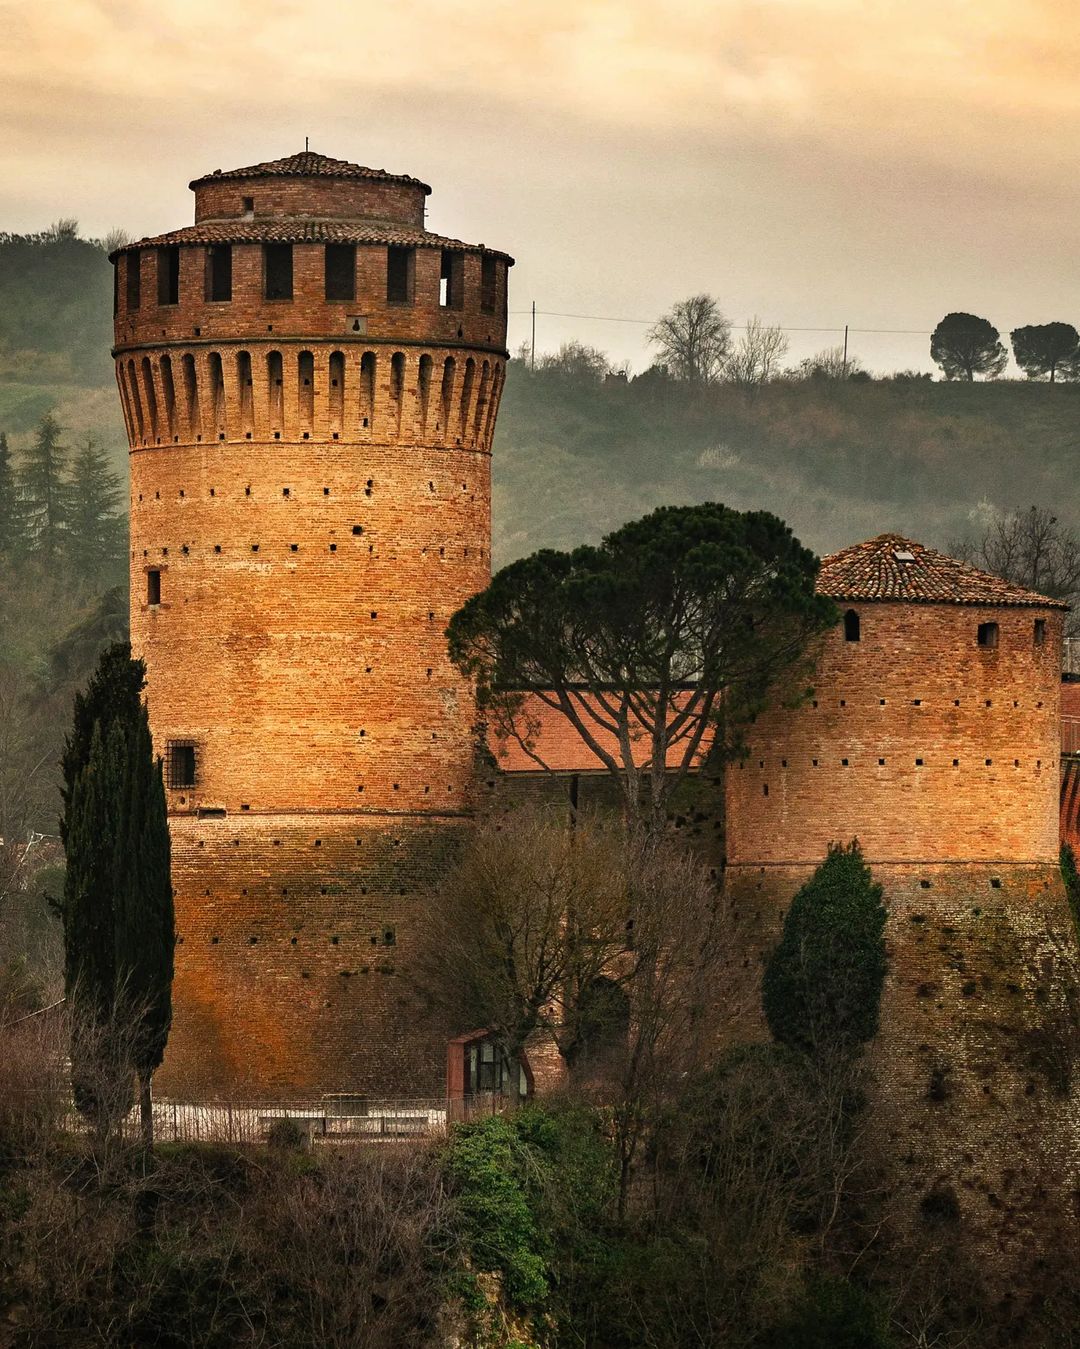 Rocca Manfrediana (Brisighella Fortress)